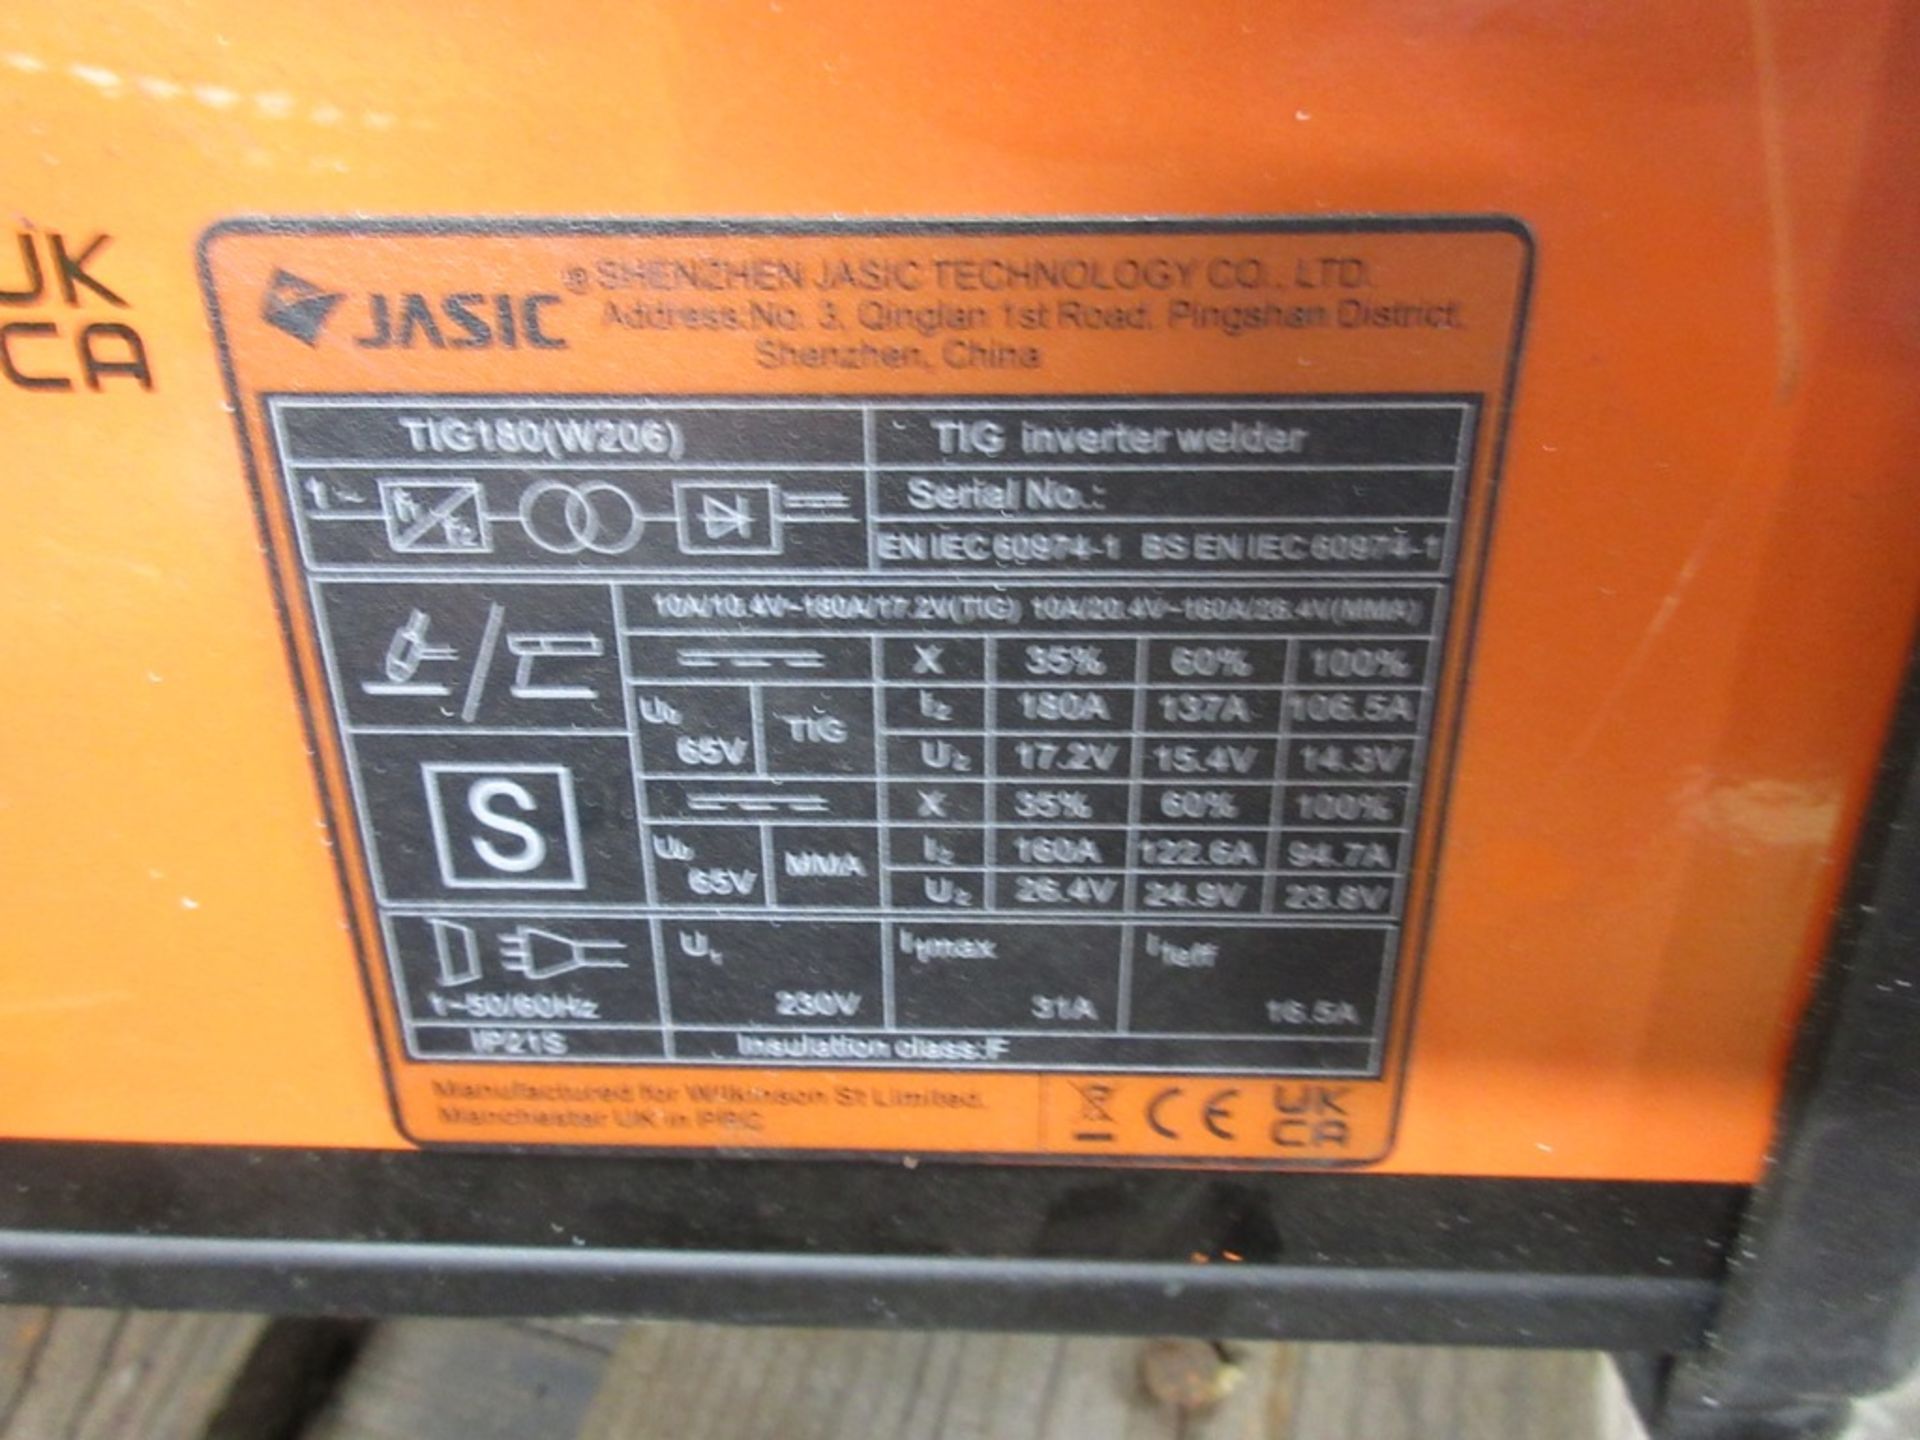 Jasic Pro 180 amp tig welding set, serial no. ENIEC60974-1 - Bild 2 aus 3